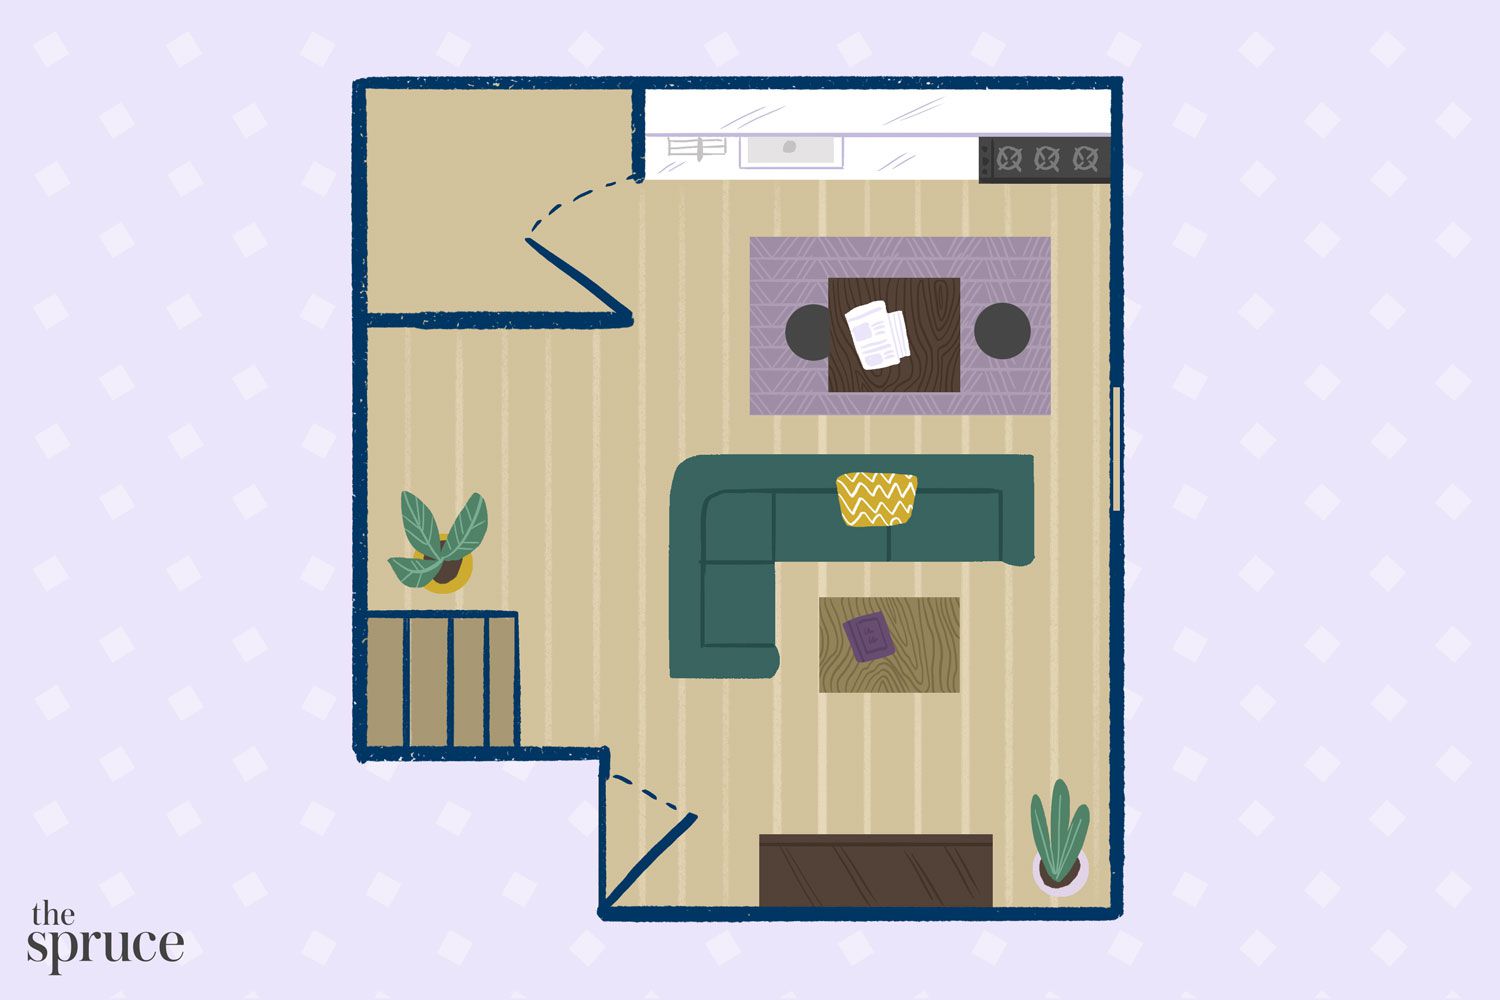 kleine wohnzimmereinrichtung für familie illustration